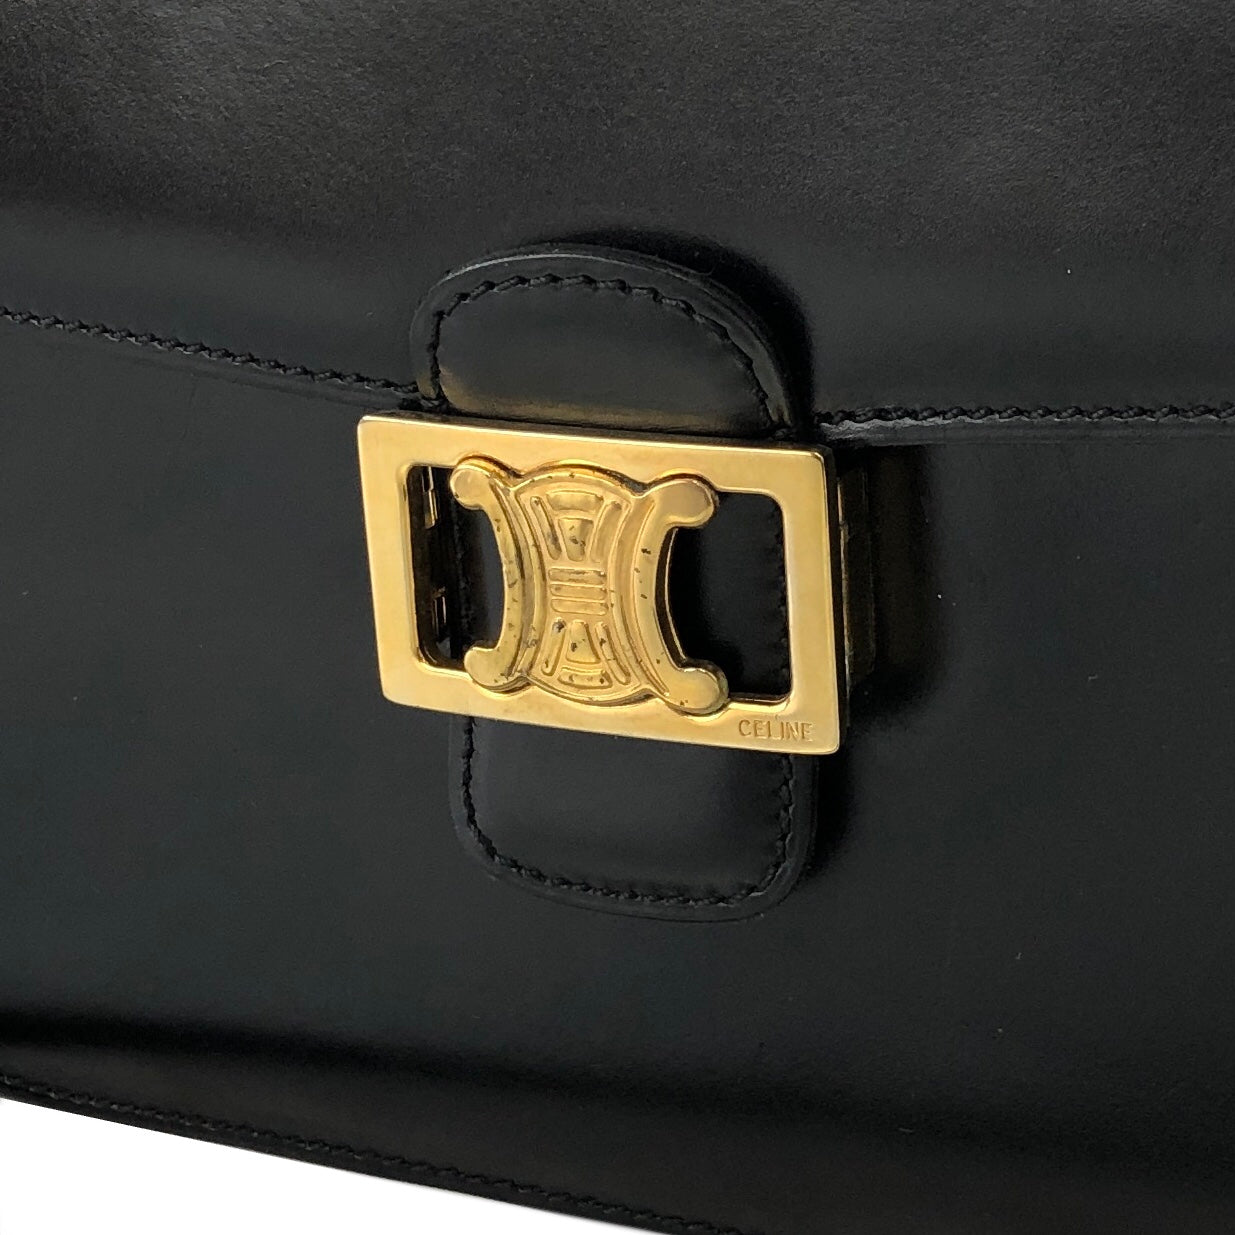 Celine Triomphe Calfskin Leather Shoulder Bag Black